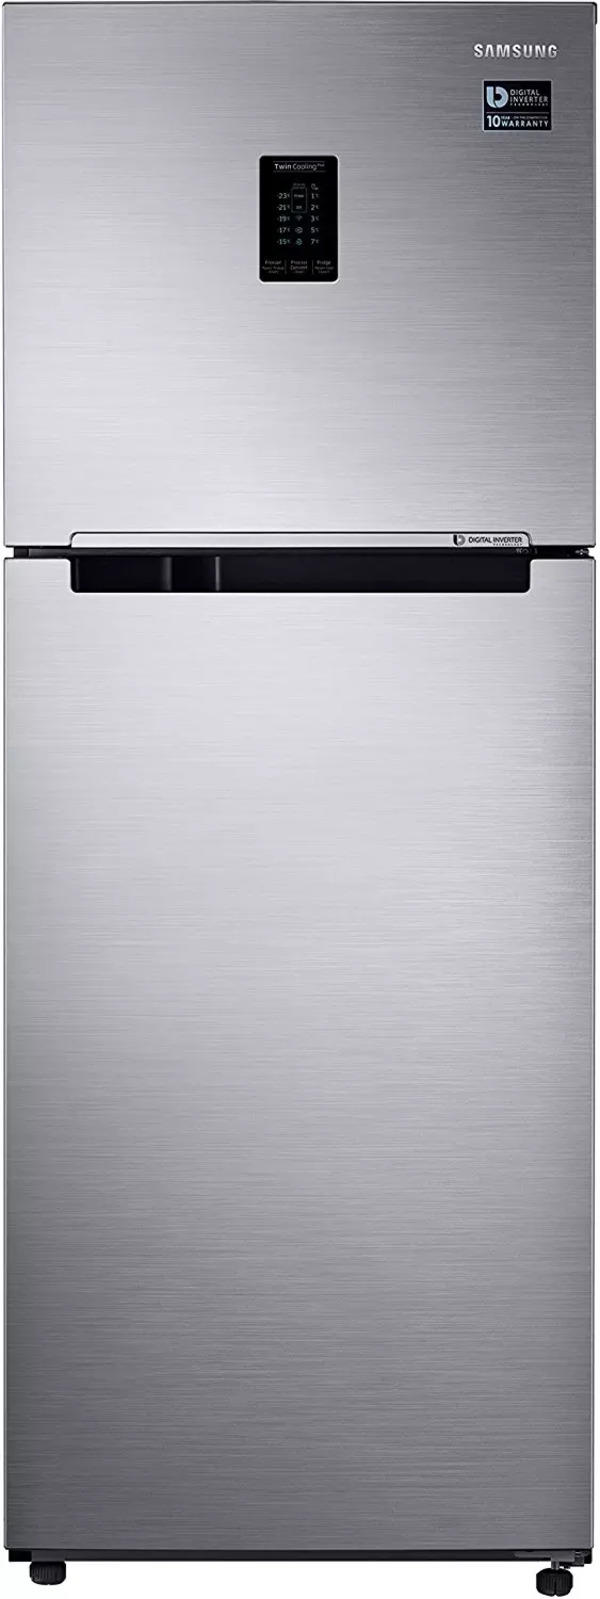 Samsung 345 L 3 Star Frost Free Double-Door Refrigerator (RT37M5518S8/HL, Elegant Inox, Inverter Compressor, 5 in 1 Convertible)